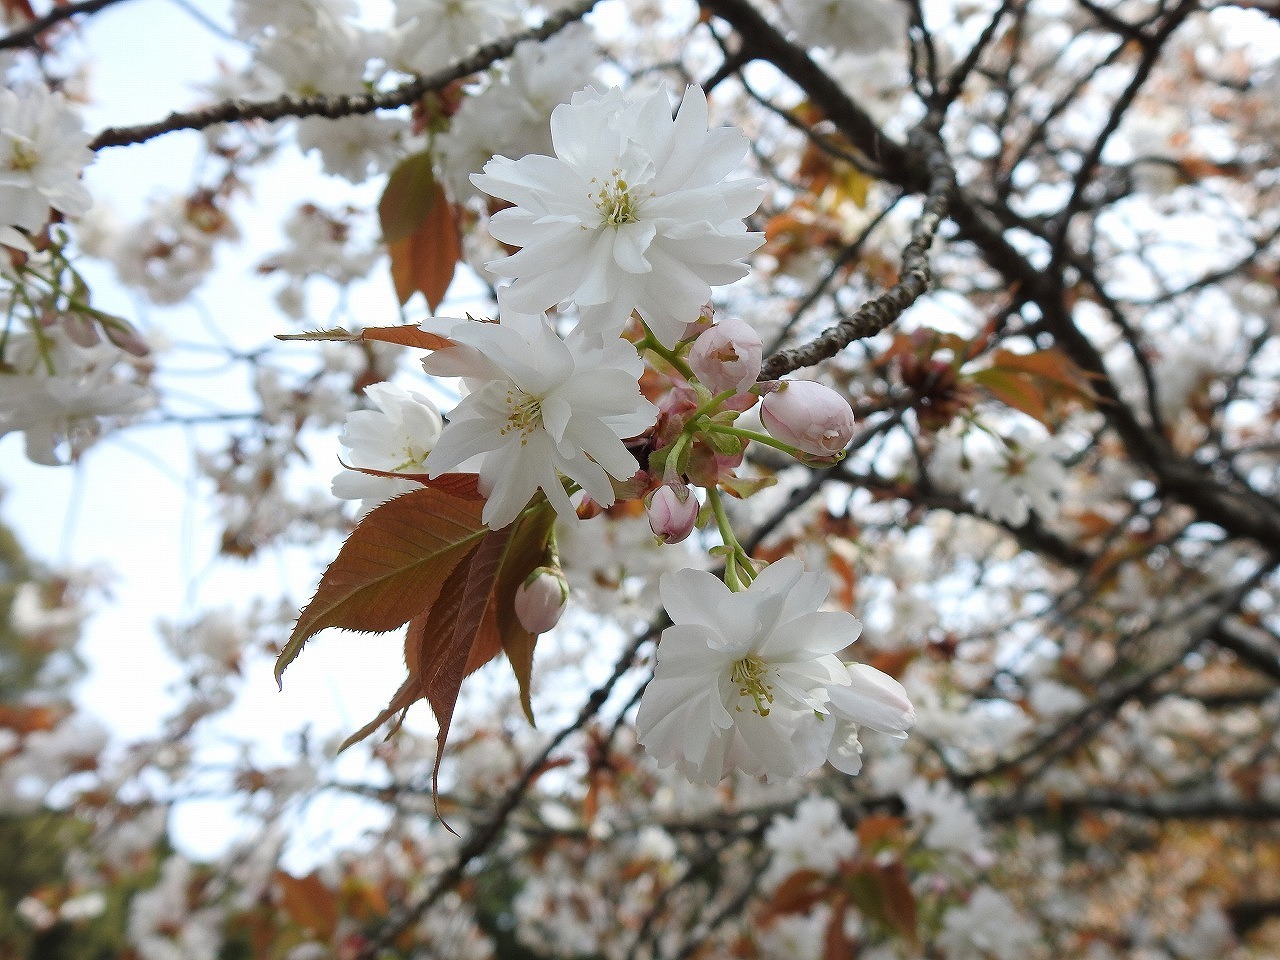 『中将姫誓願桜は私の一番好きな桜です』 - 自然風の自然風だより